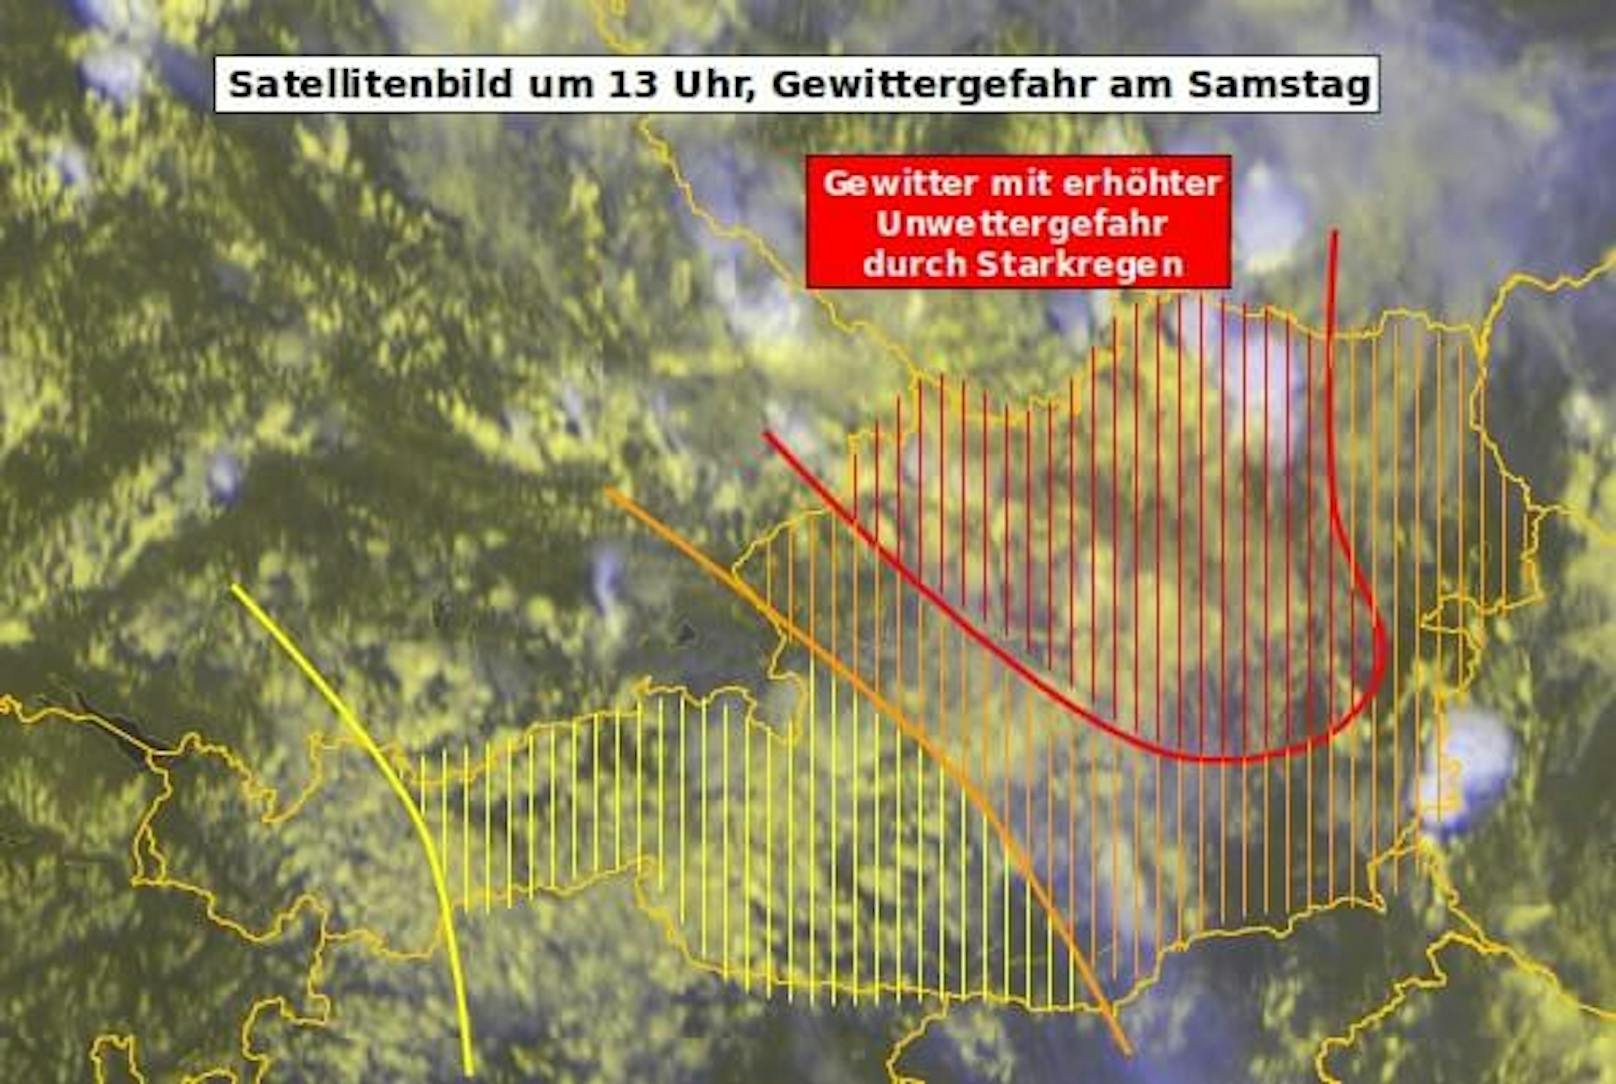 Satellitenbild um 13 Uhr MESZ und Unwettergefahr am Samstag